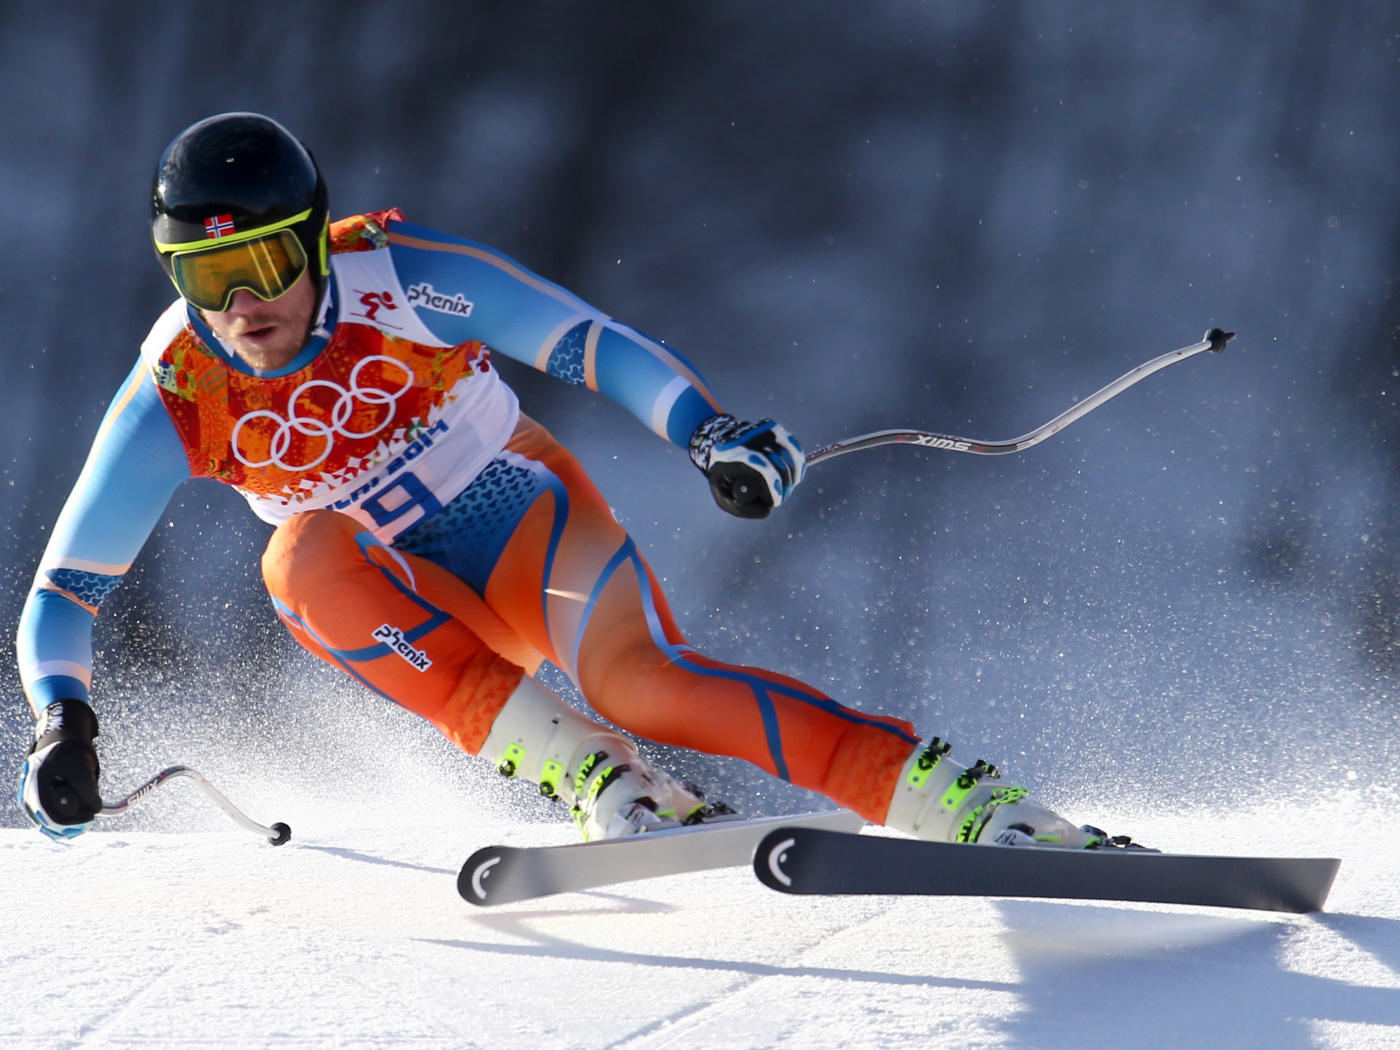 Croatian skier Ivica Kostelic silver medal in Sochi 2014